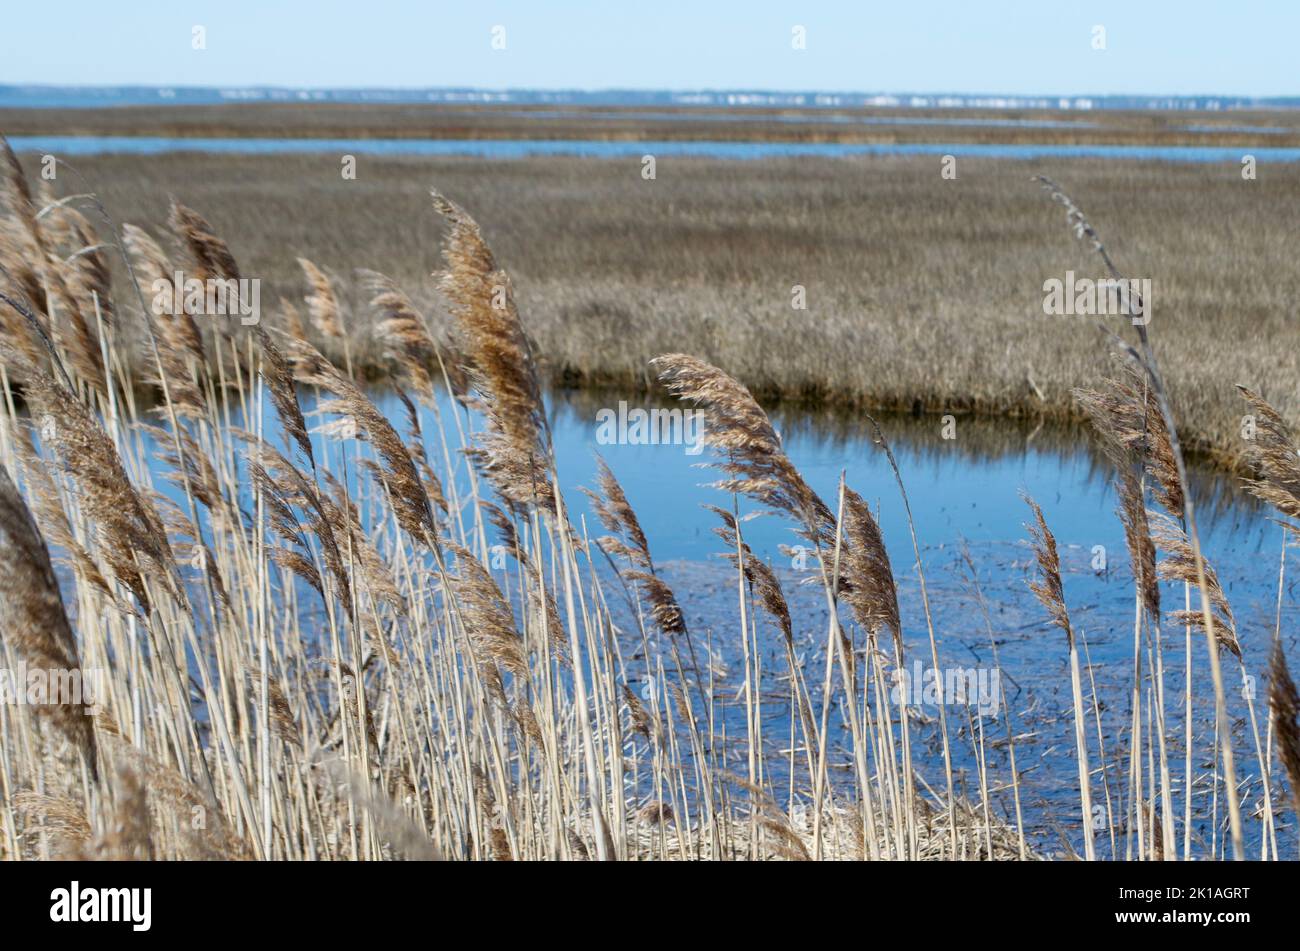 Las cañas de la bahía de Delaware y el pantano Foto de stock